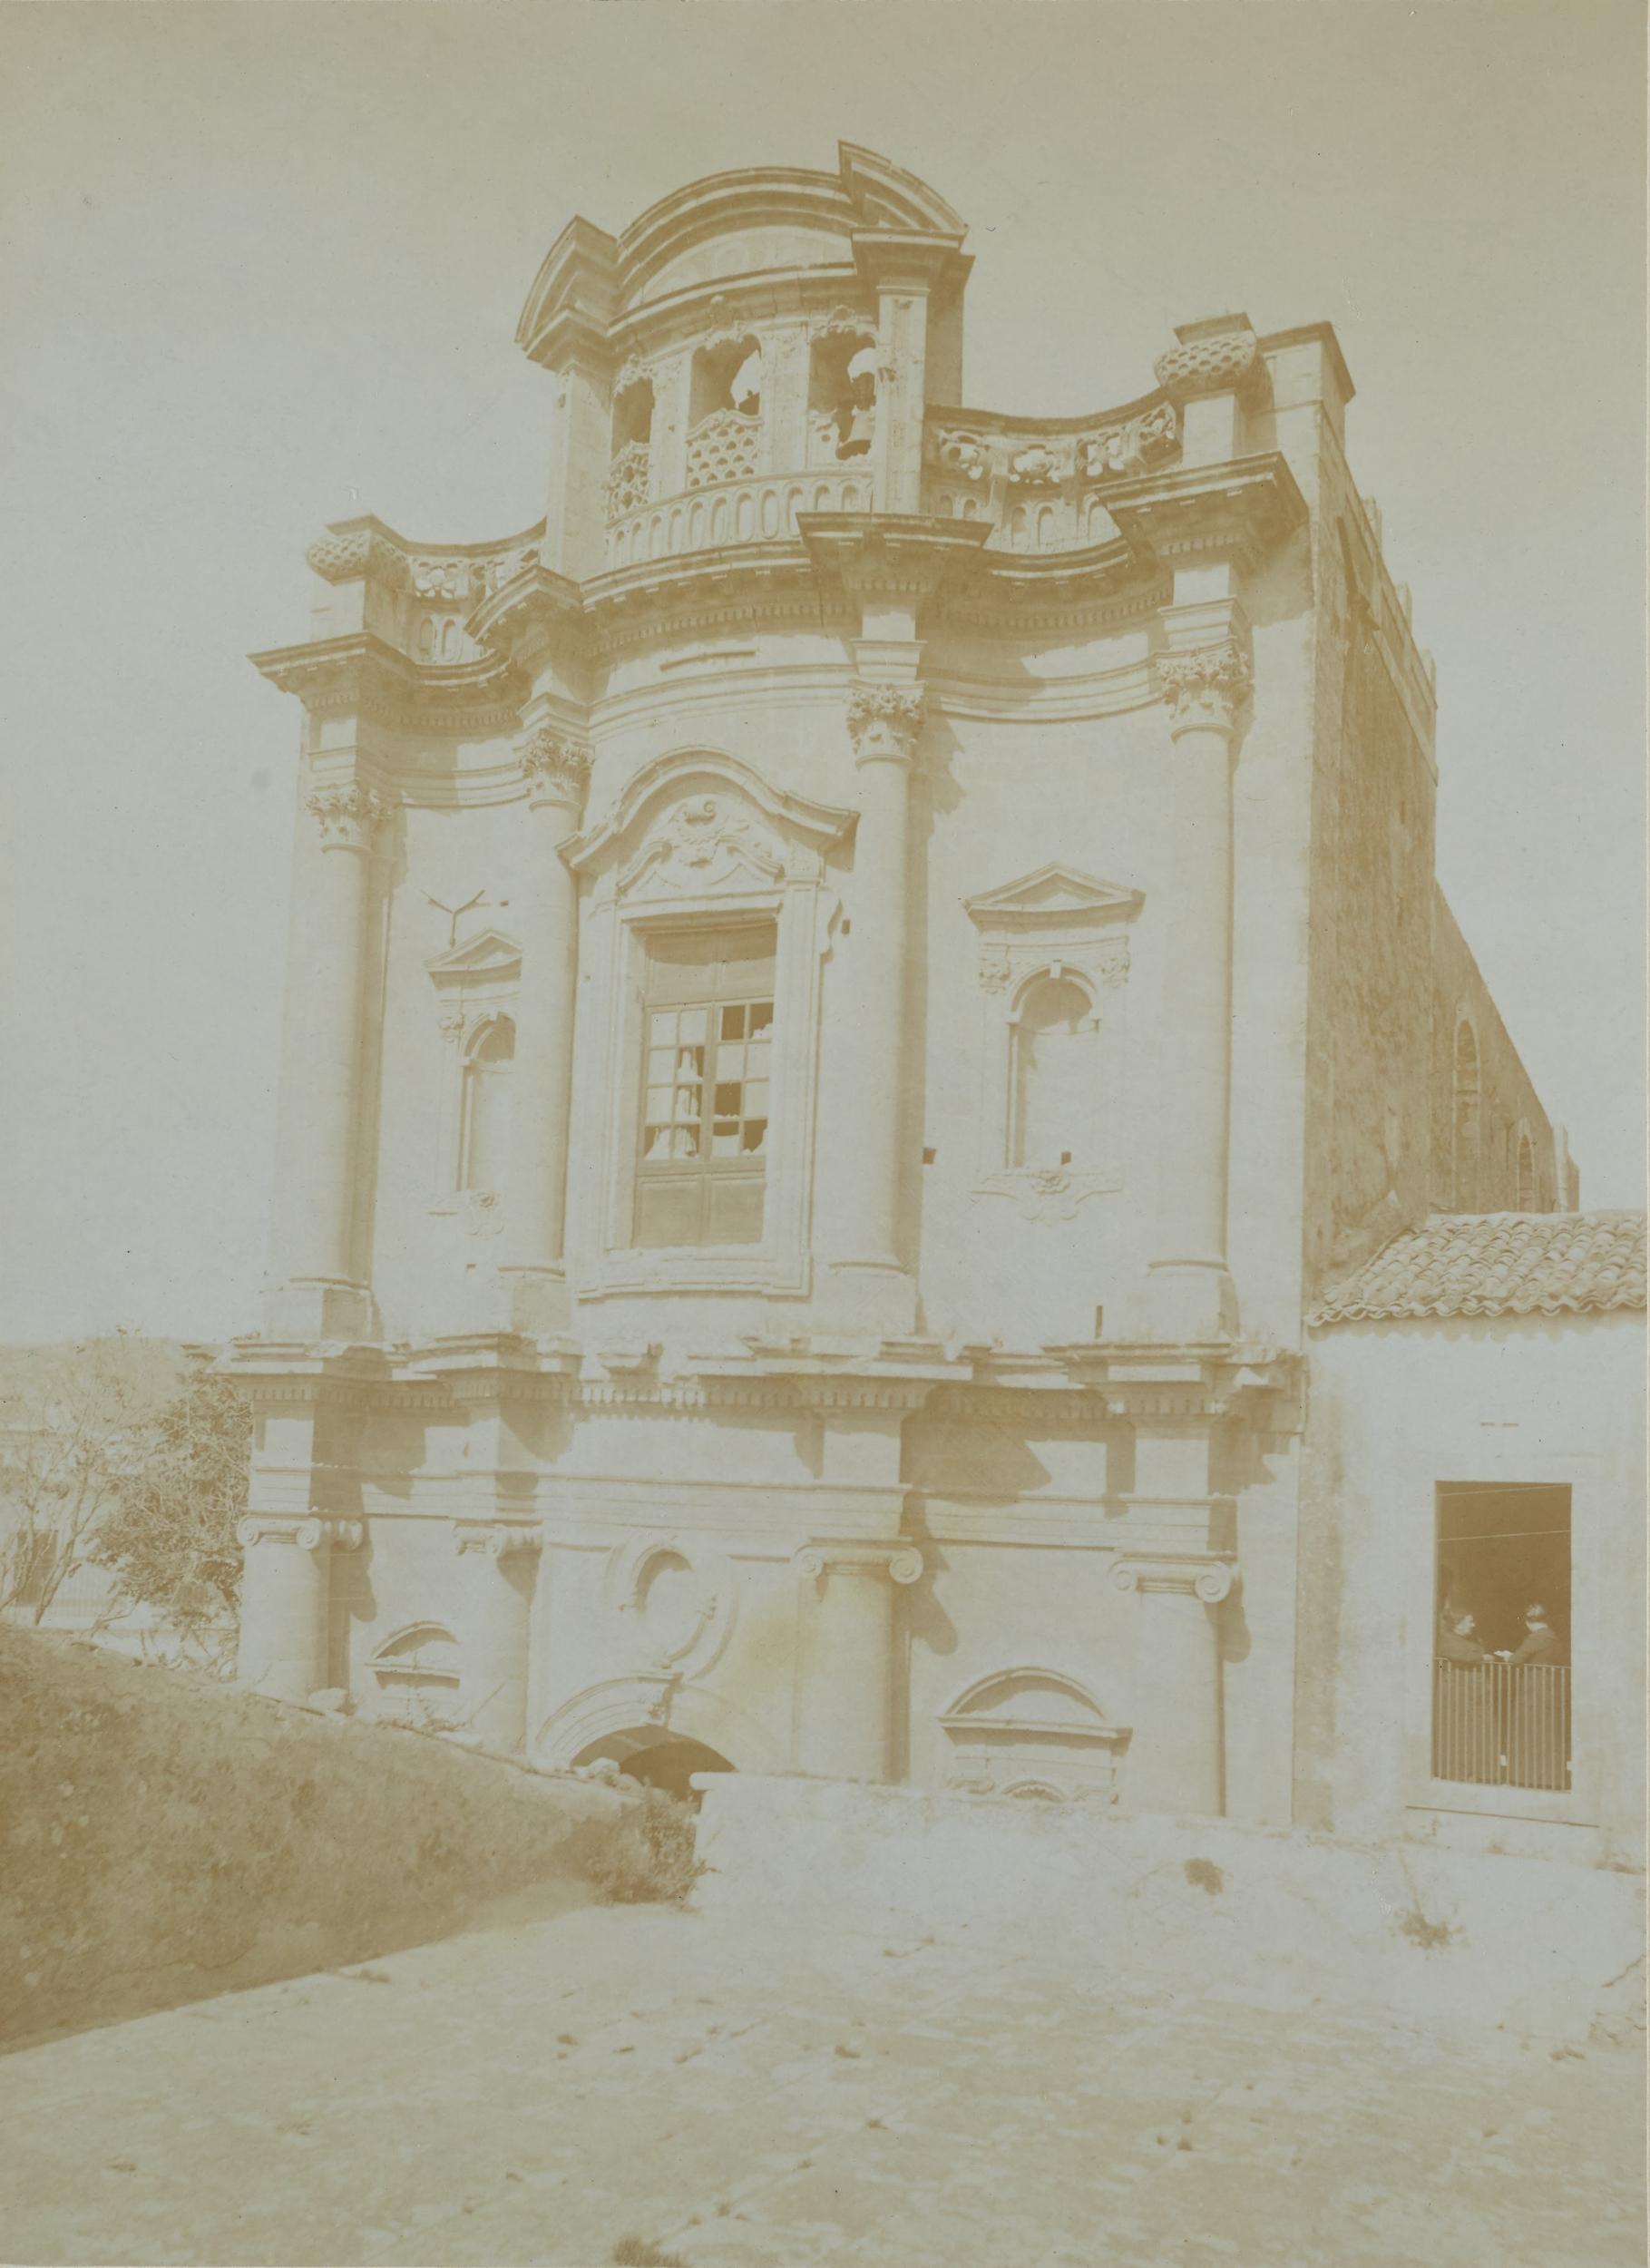 Fotografo non identificato, Avola - Chiesa della SS. Annunziata, facciata, 1891-1910, aristotipo, MPI135437A